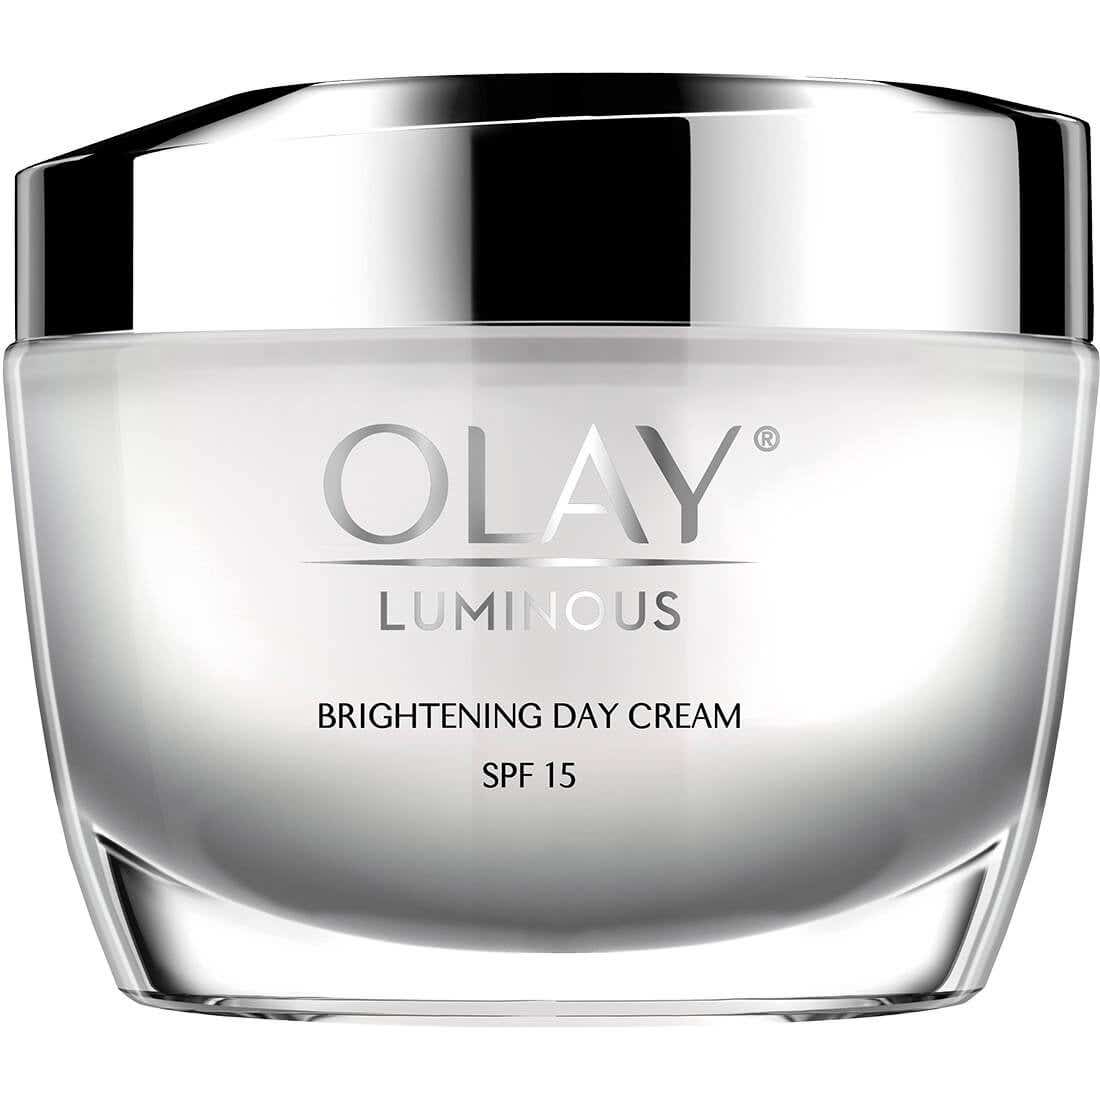 Olay Luminous Brightening Day Cream SPF 15 50ml